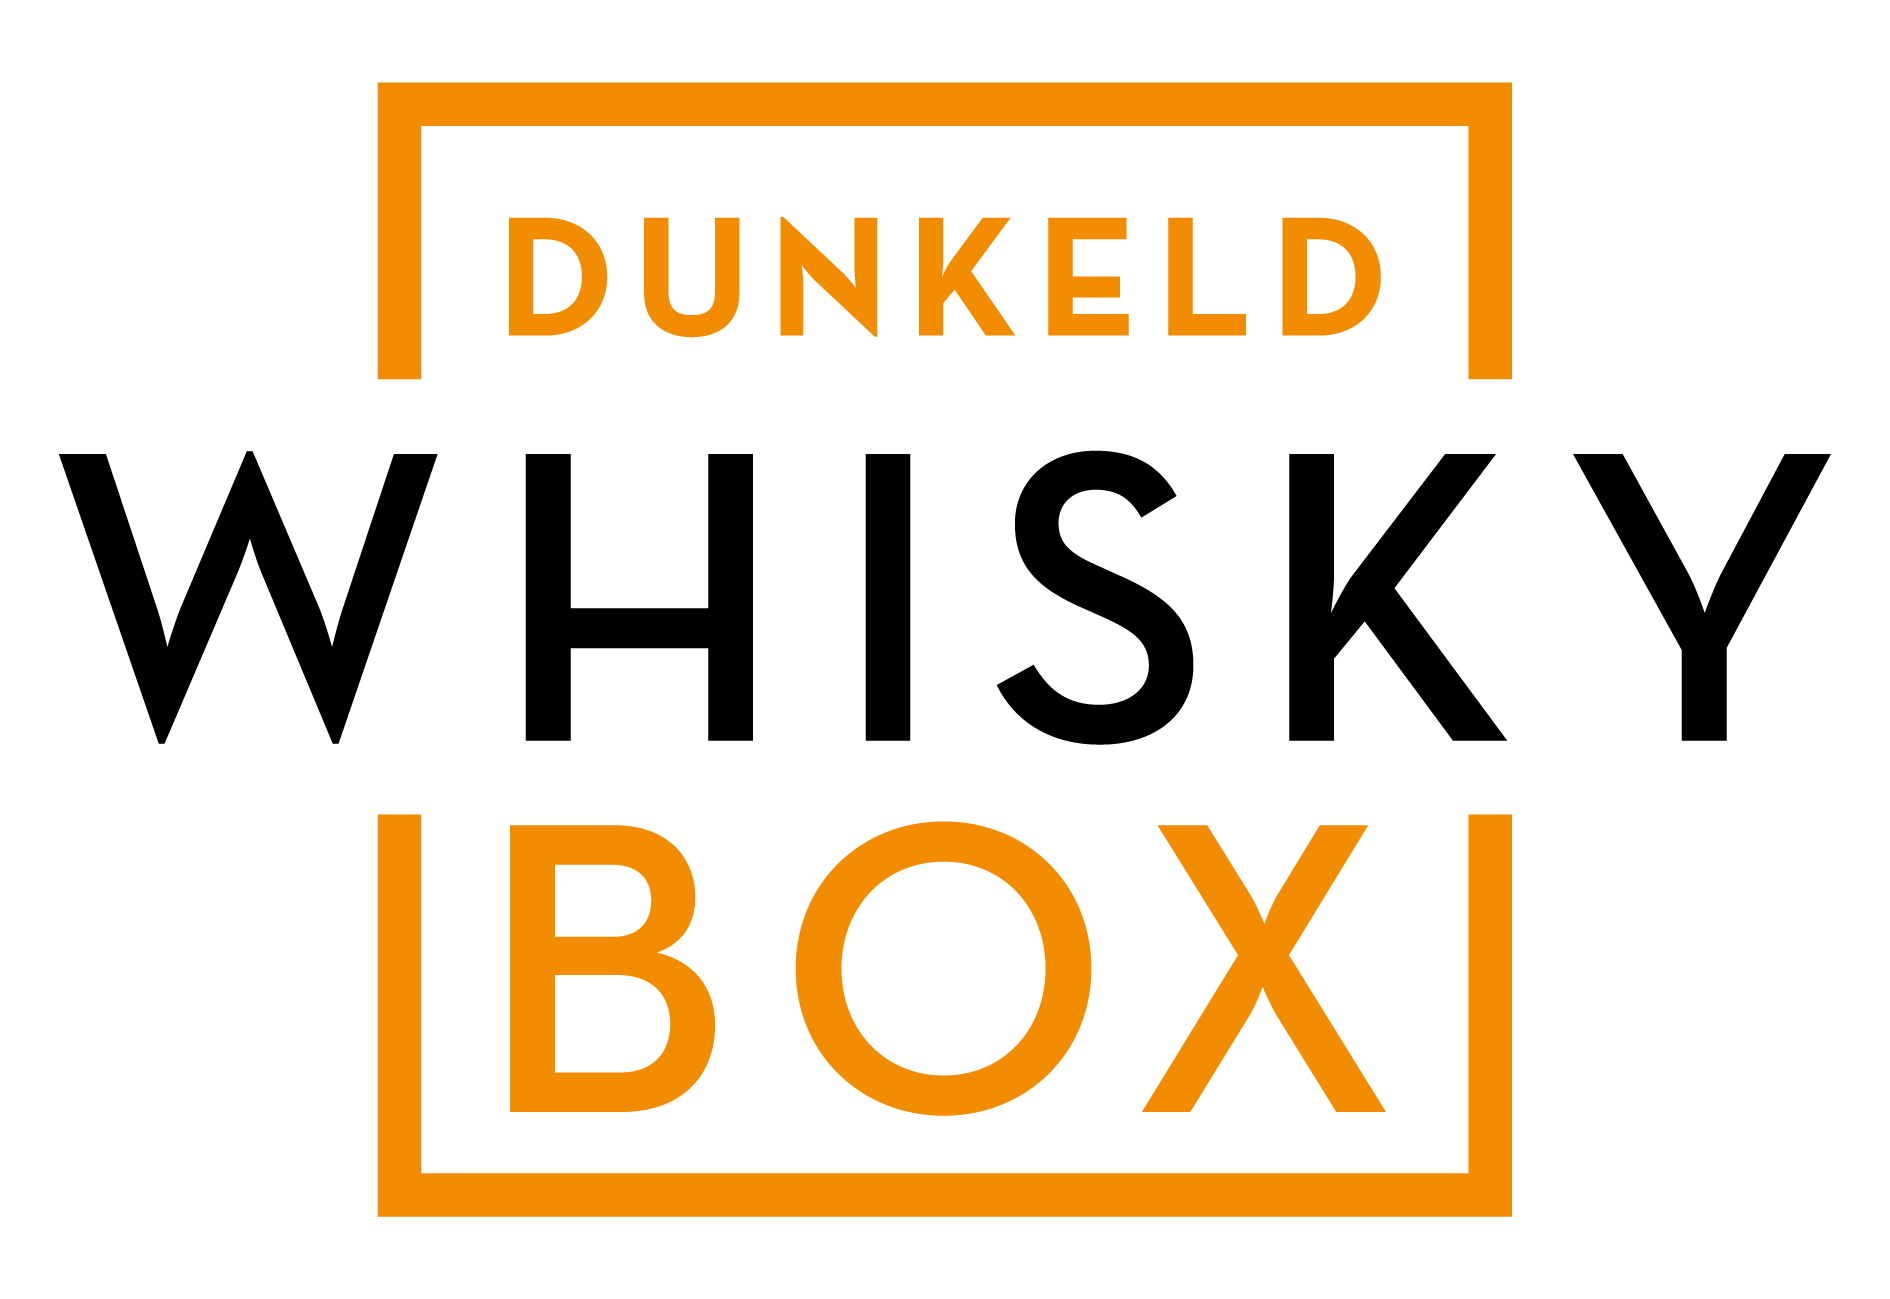 Dunkeld Whisky Box